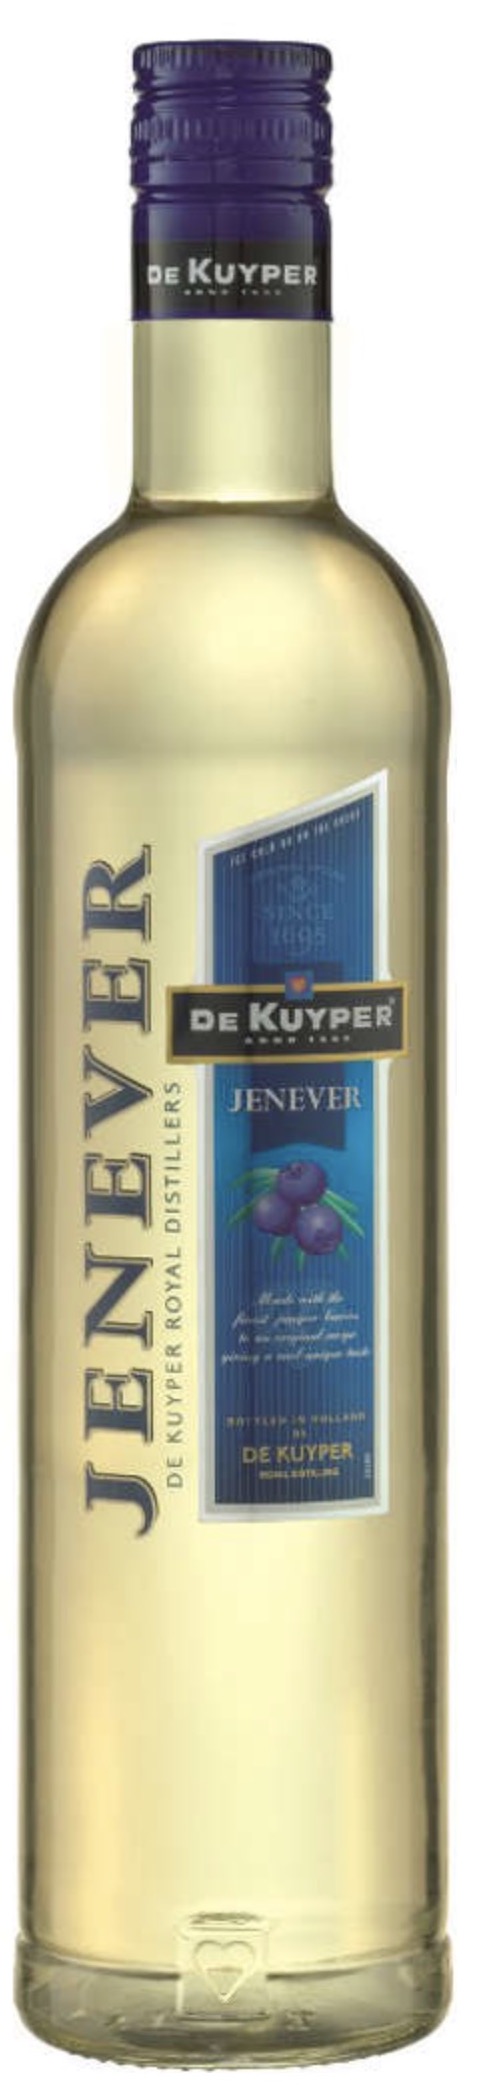 De Kuyper Jonge Genever 35% vol. 0,7L